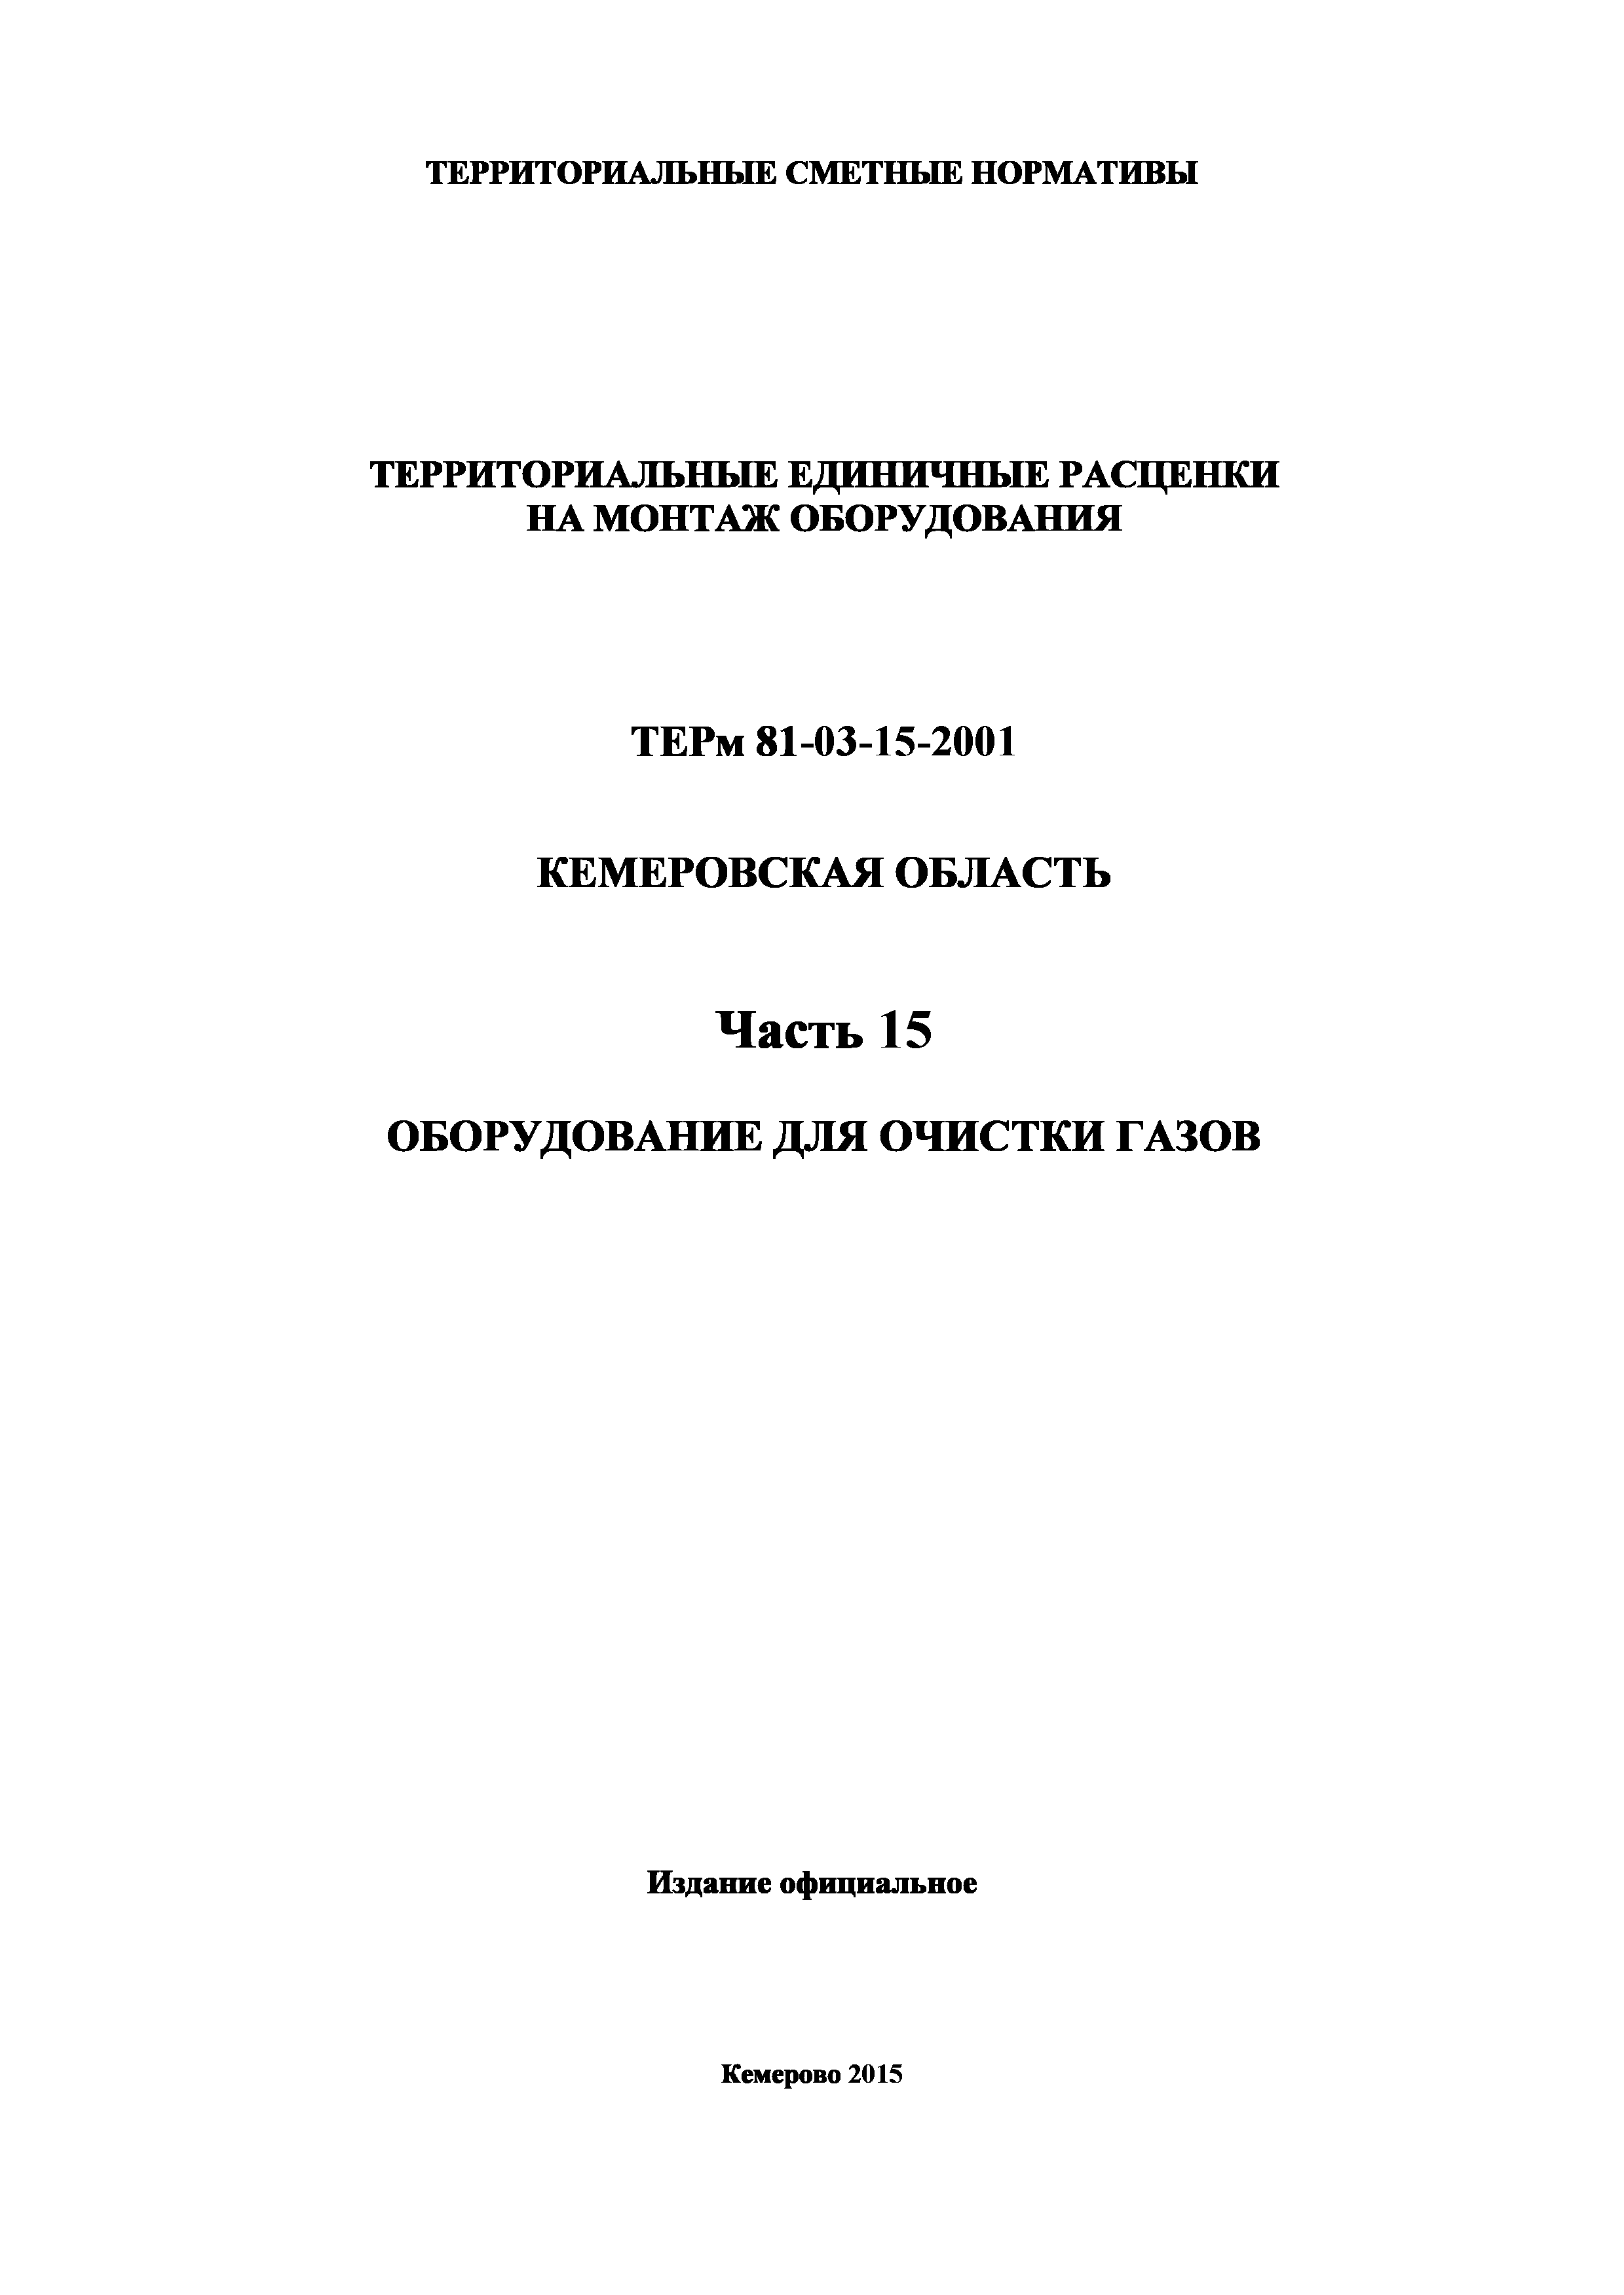 ТЕРм Кемеровская область 81-03-15-2001